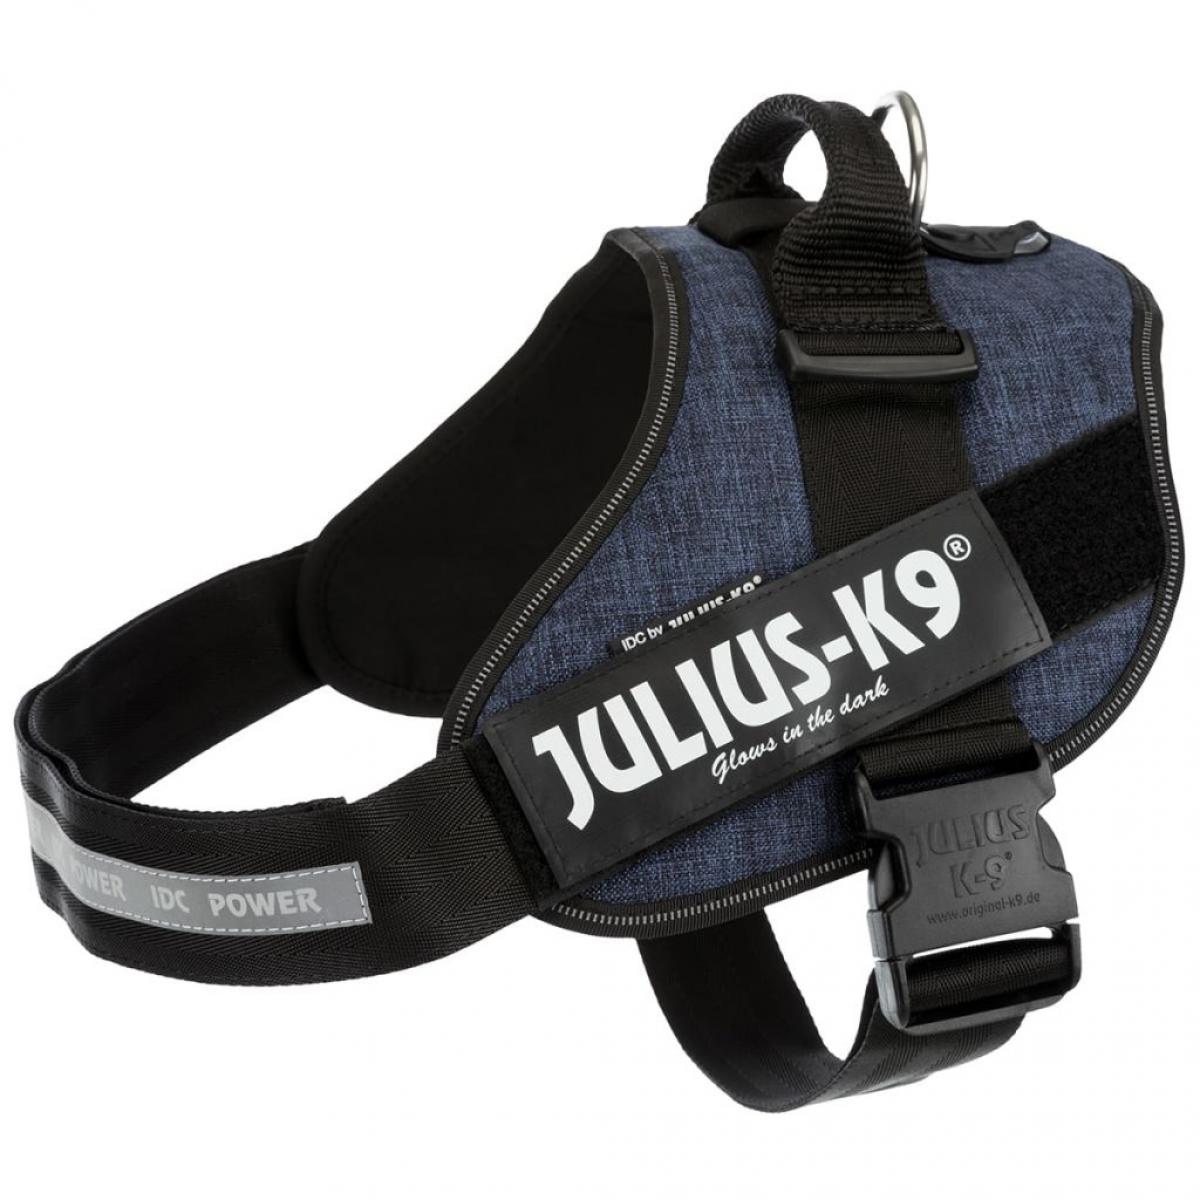 Julius K9 - Julius K9 IDC Harnais pour chiens Taille 3 Jeans 14875 - Equipement de transport pour chien